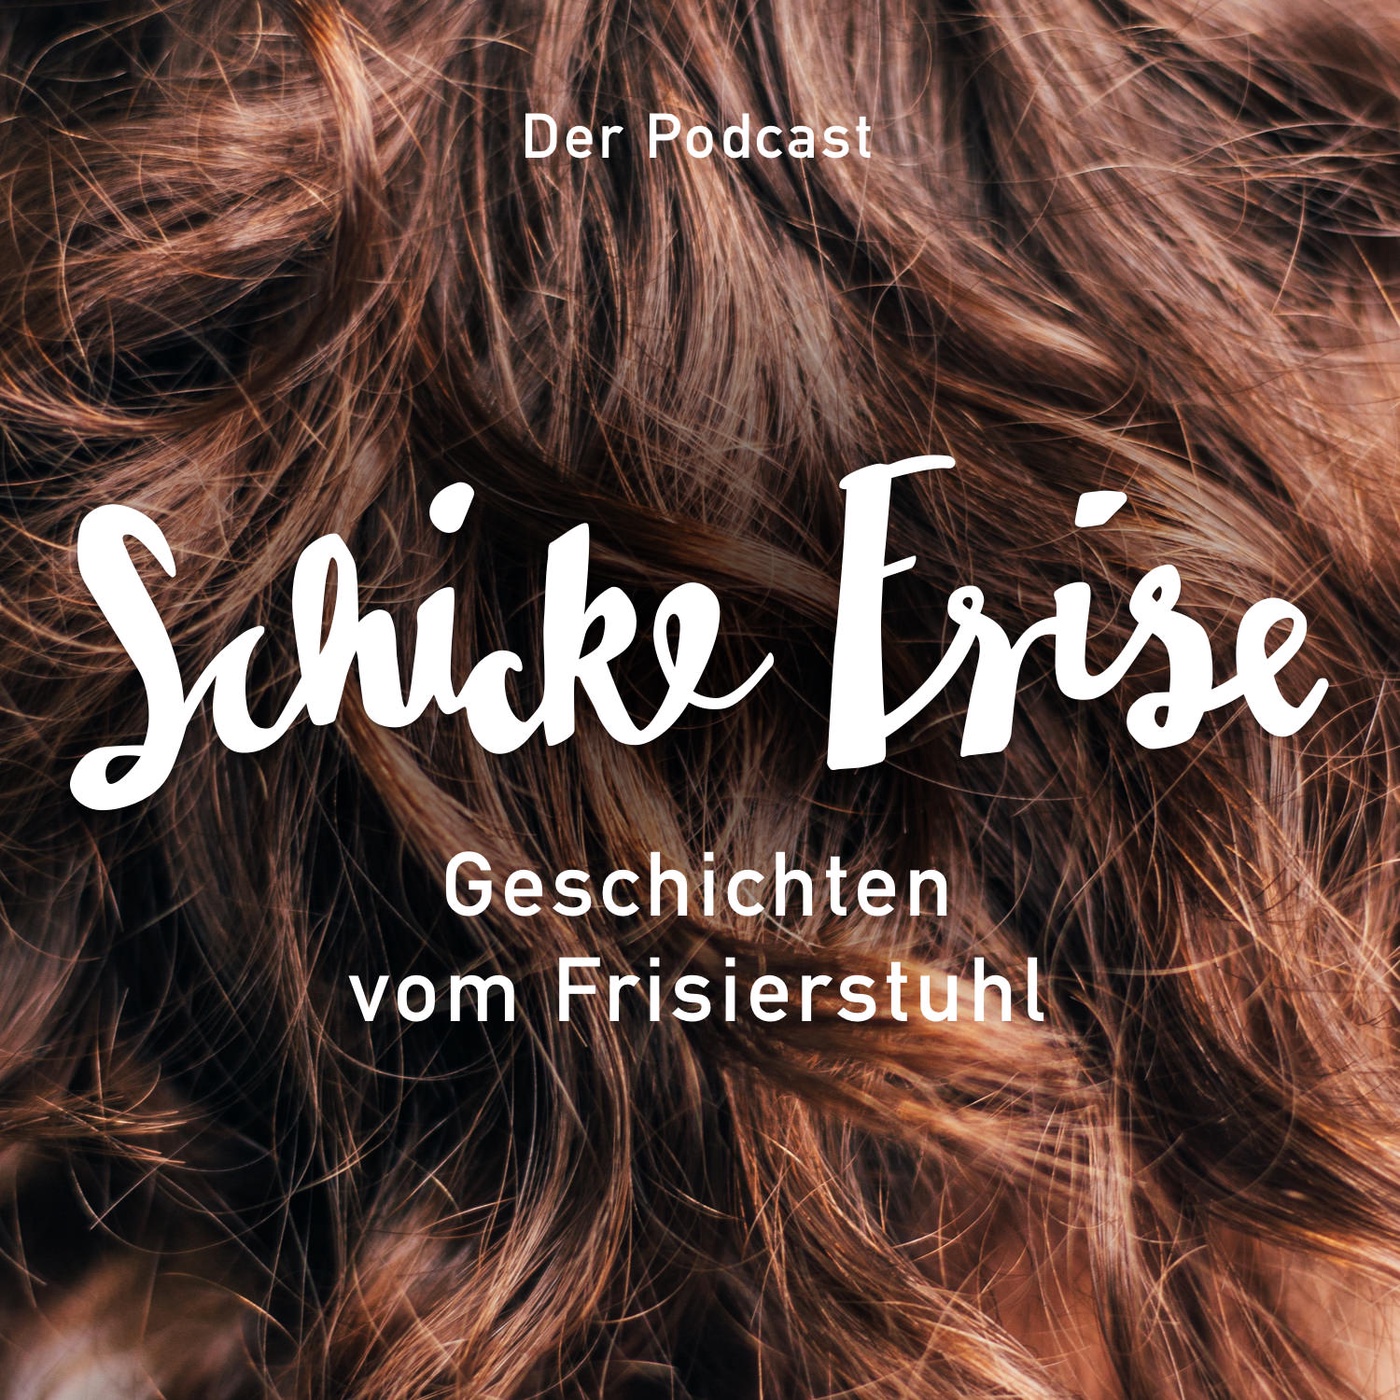 Schicke Frise Podcast - Geschichten vom Frisierstuhl